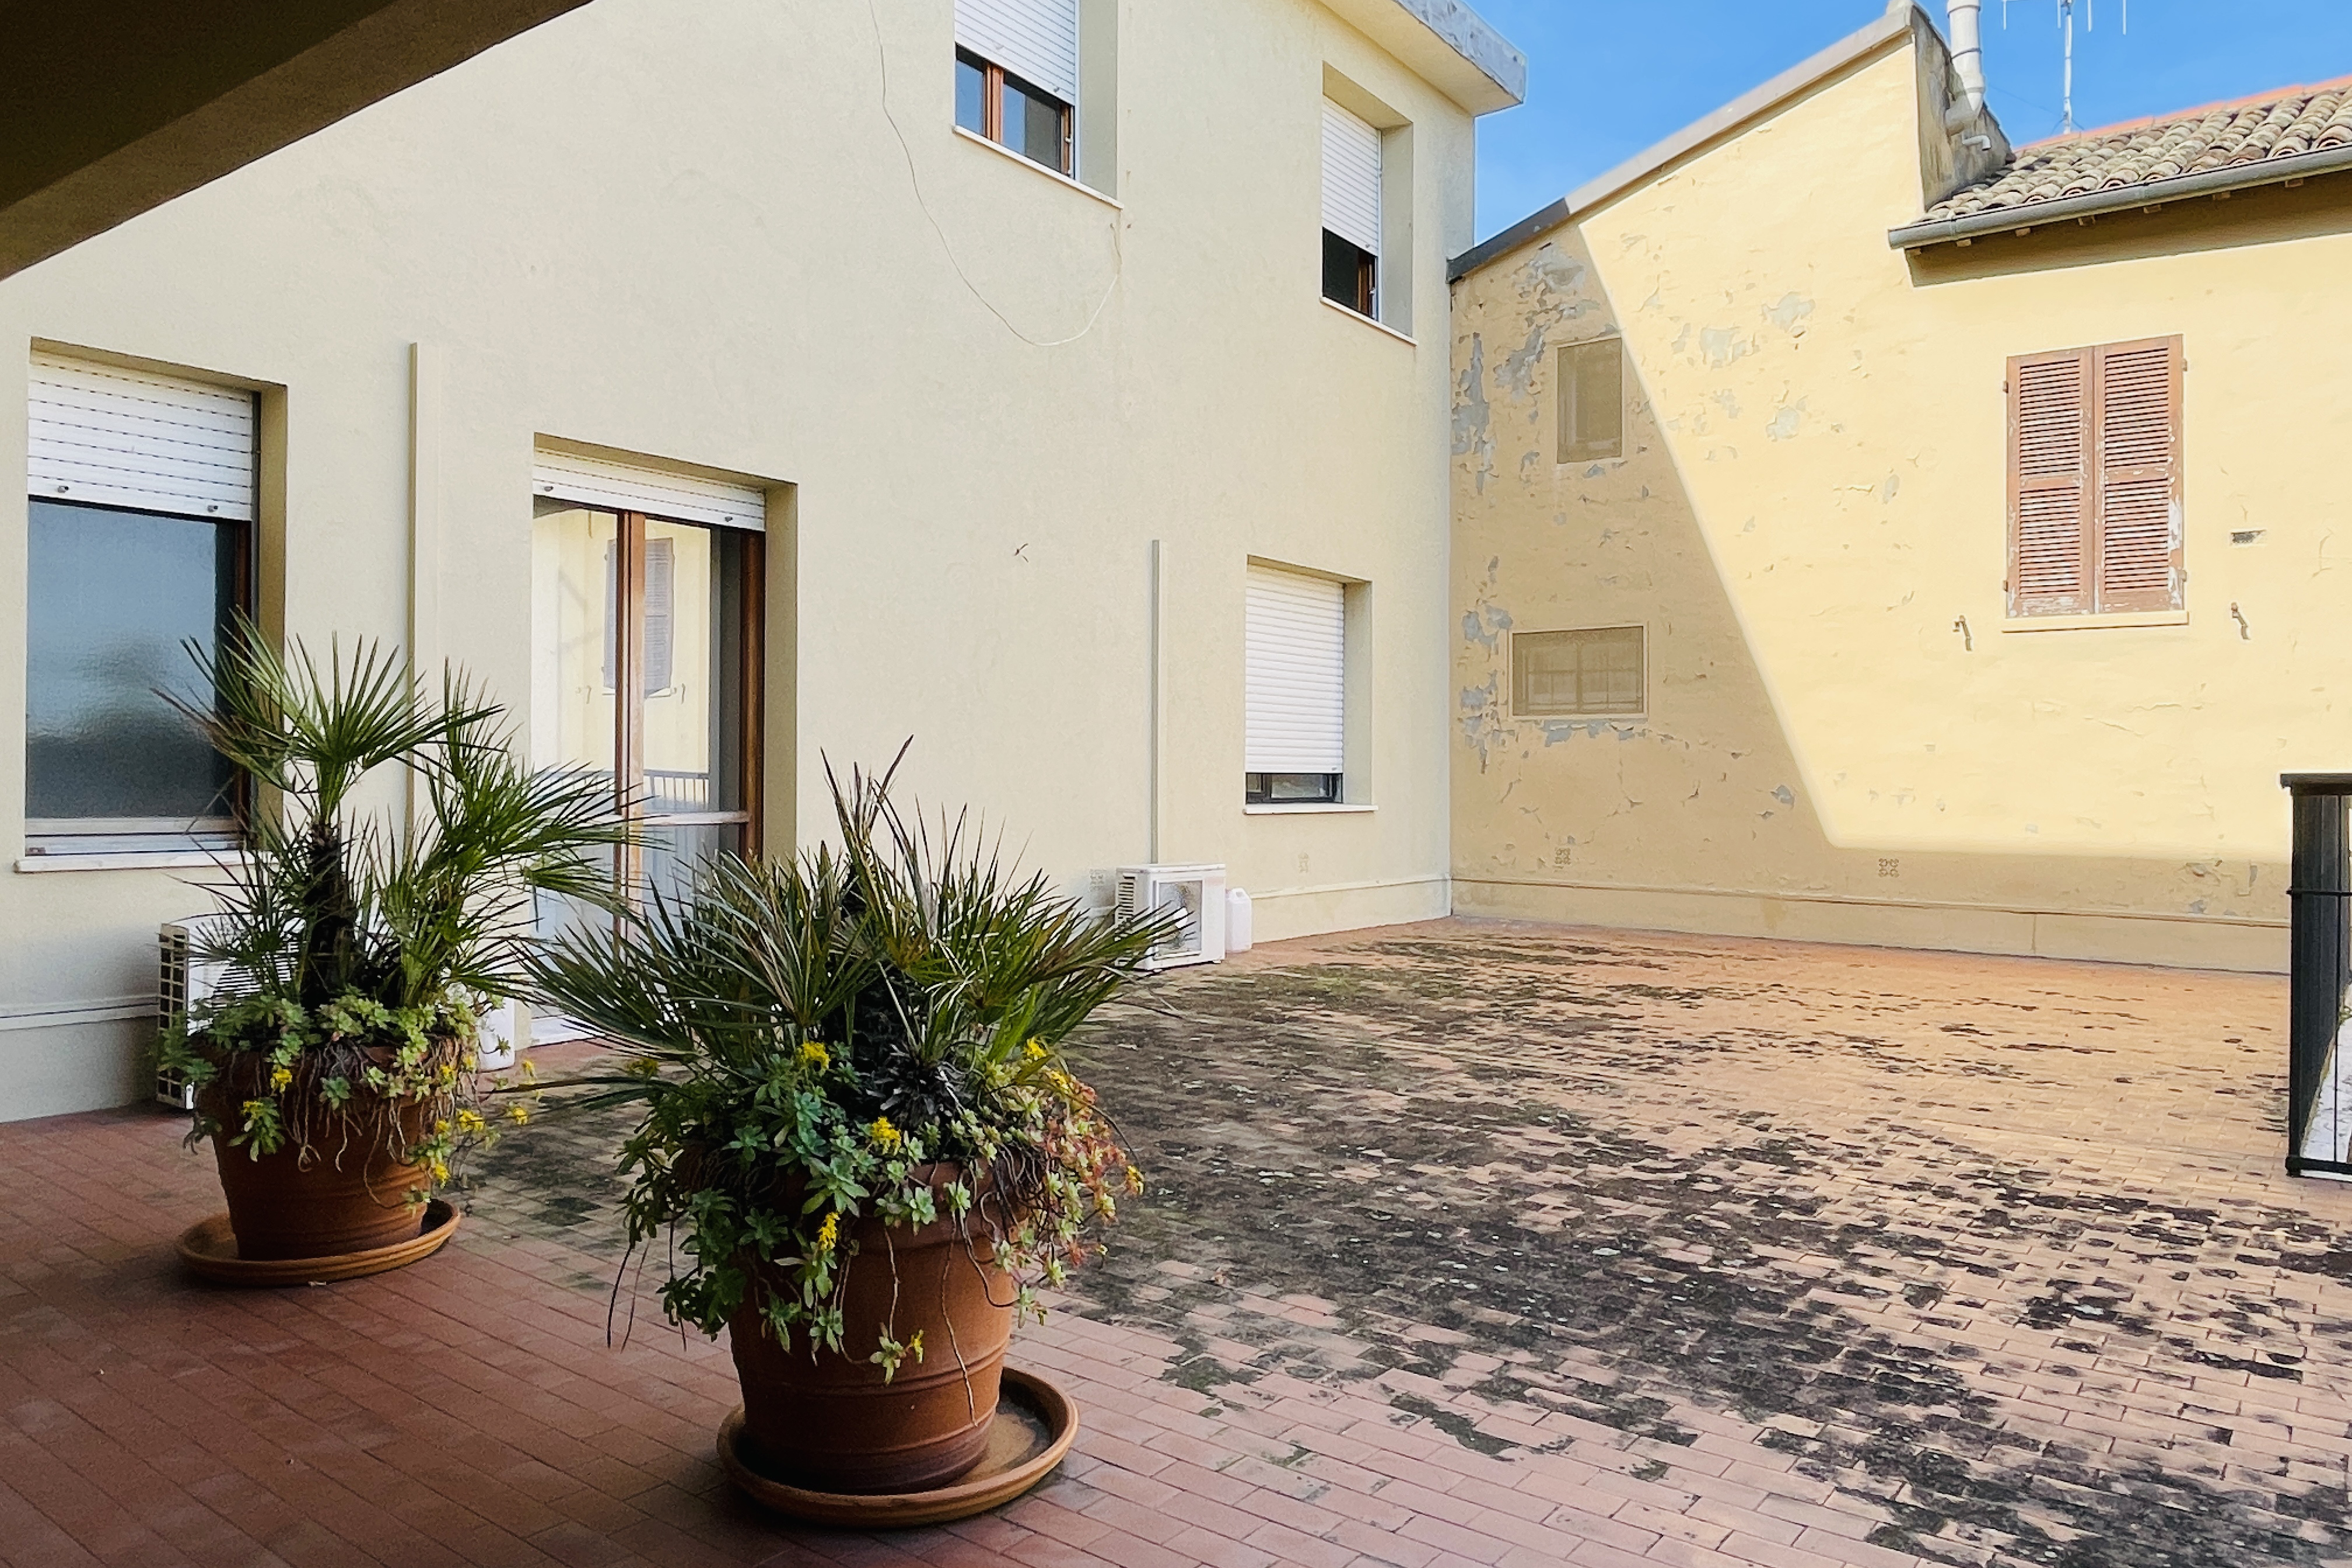 Vendita ampio appartamento ultimo piano con terrazza Pesaro - Zona centro storico (AP765)